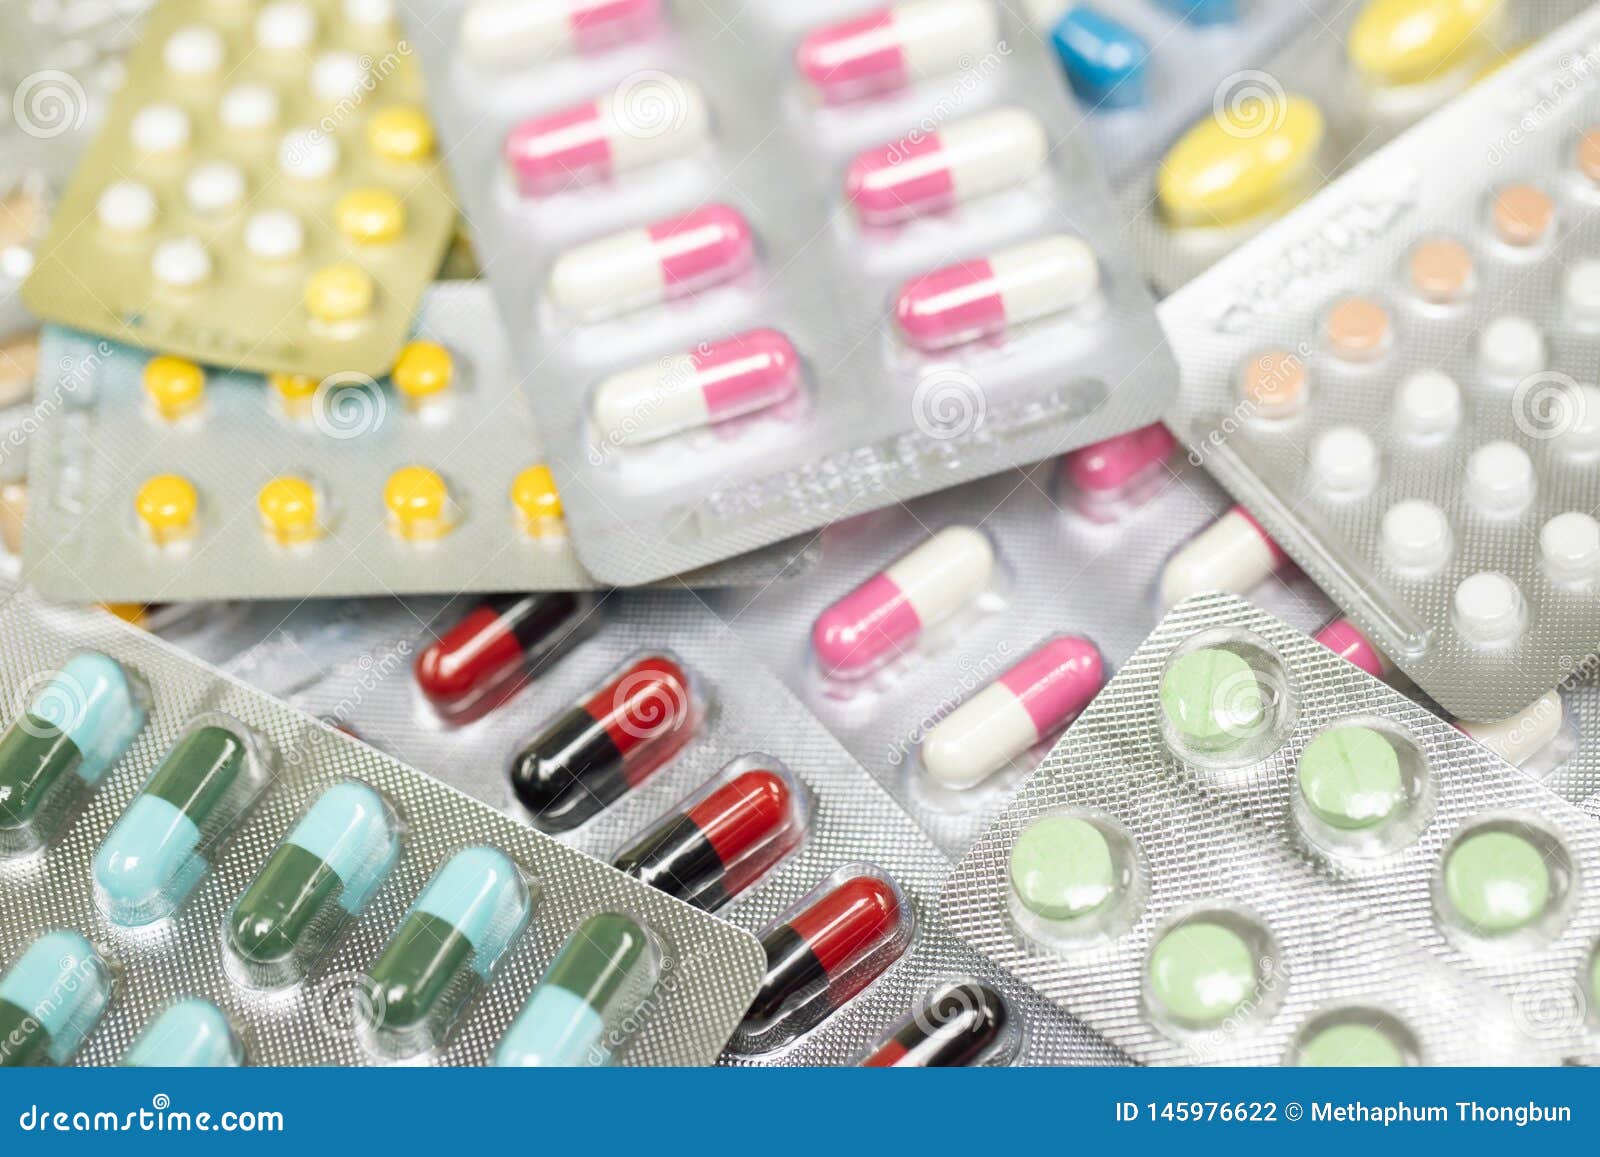 close up pharmaceuticals antibiotics pills medicine in blister packs.